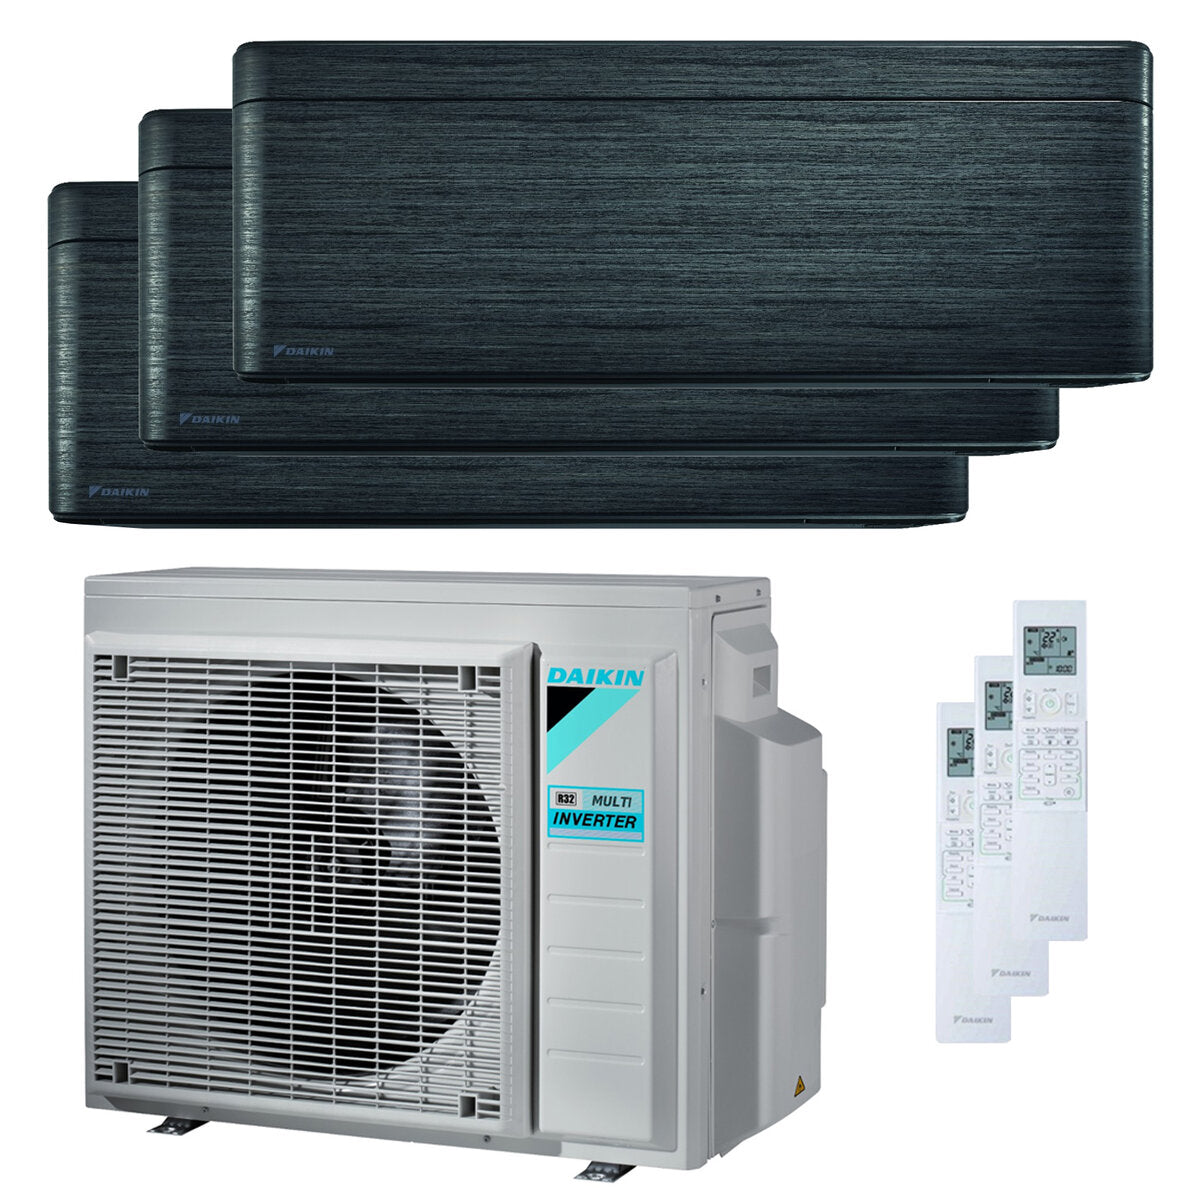 Daikin Stylish Trial Split Klimaanlage 7000 + 7000 + 15000 BTU Inverter A +++ WLAN Außengerät 5,2 kW